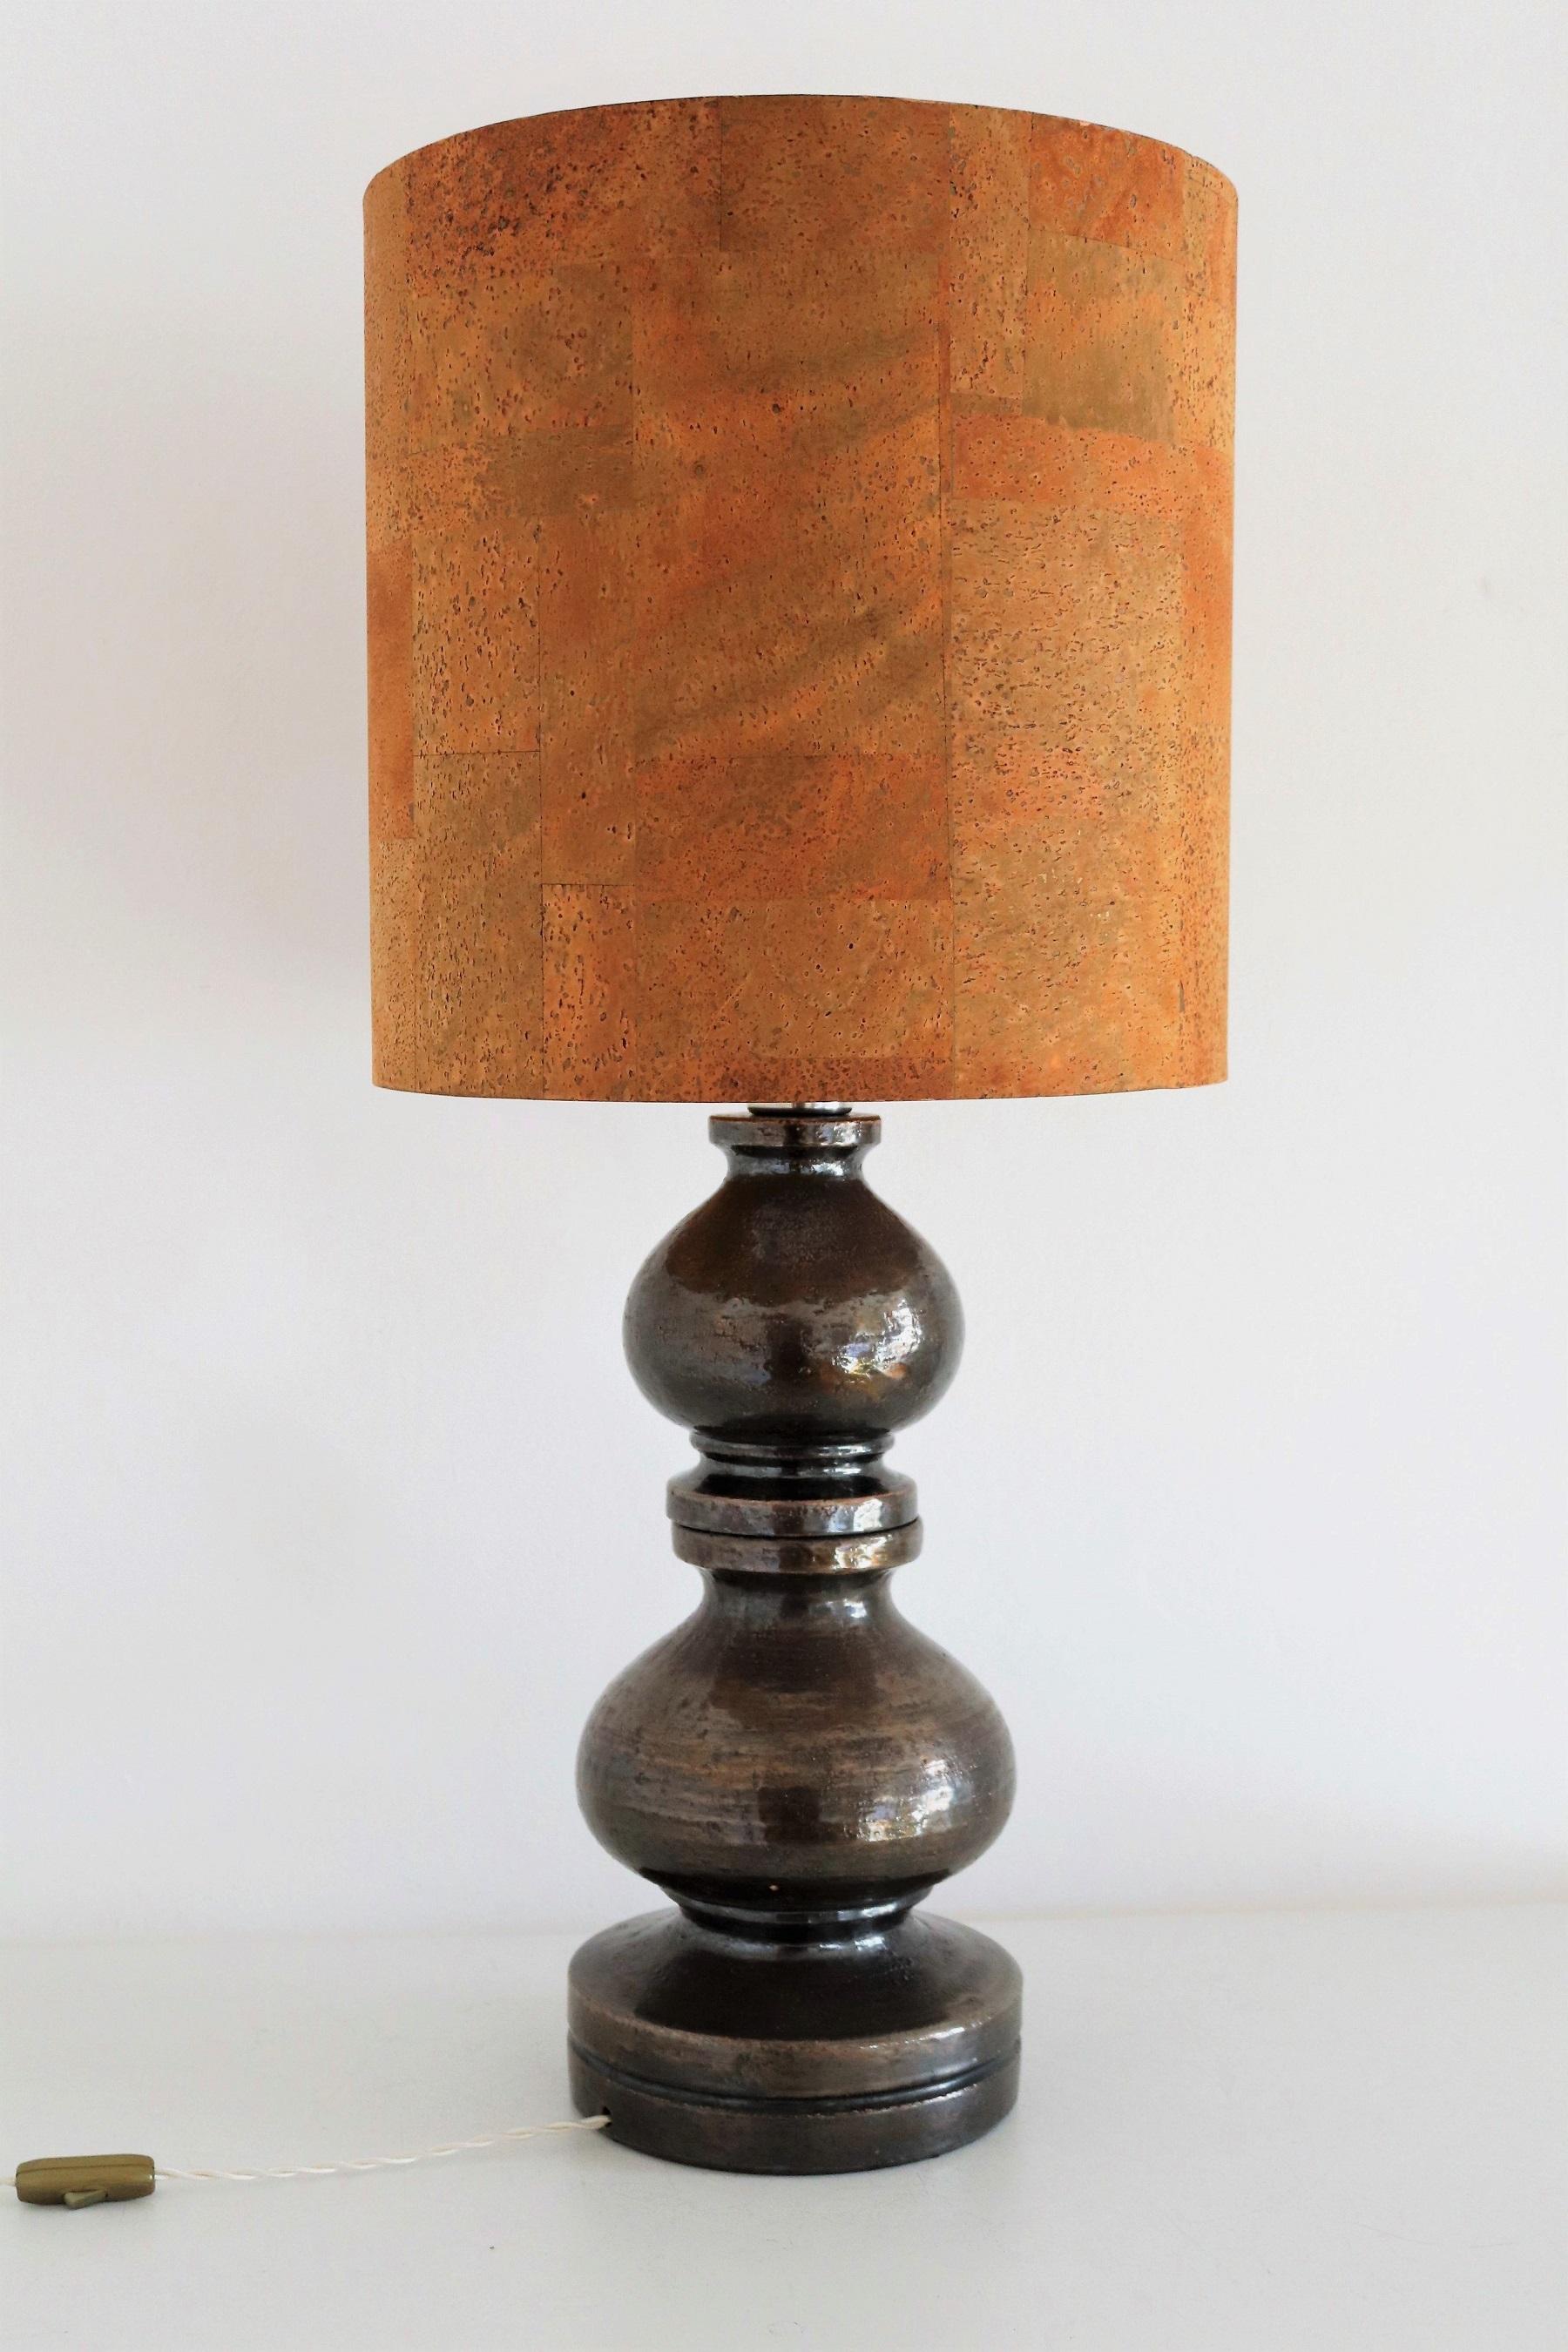 Superbe lampe de table haute fabriquée à la main à partir d'une grande et lourde base en céramique de couleur anthracite - marron foncé.
Conçu par Aldo Londi et produit par Bitossi de Montelupo Fiorentino, en Italie, dans les années